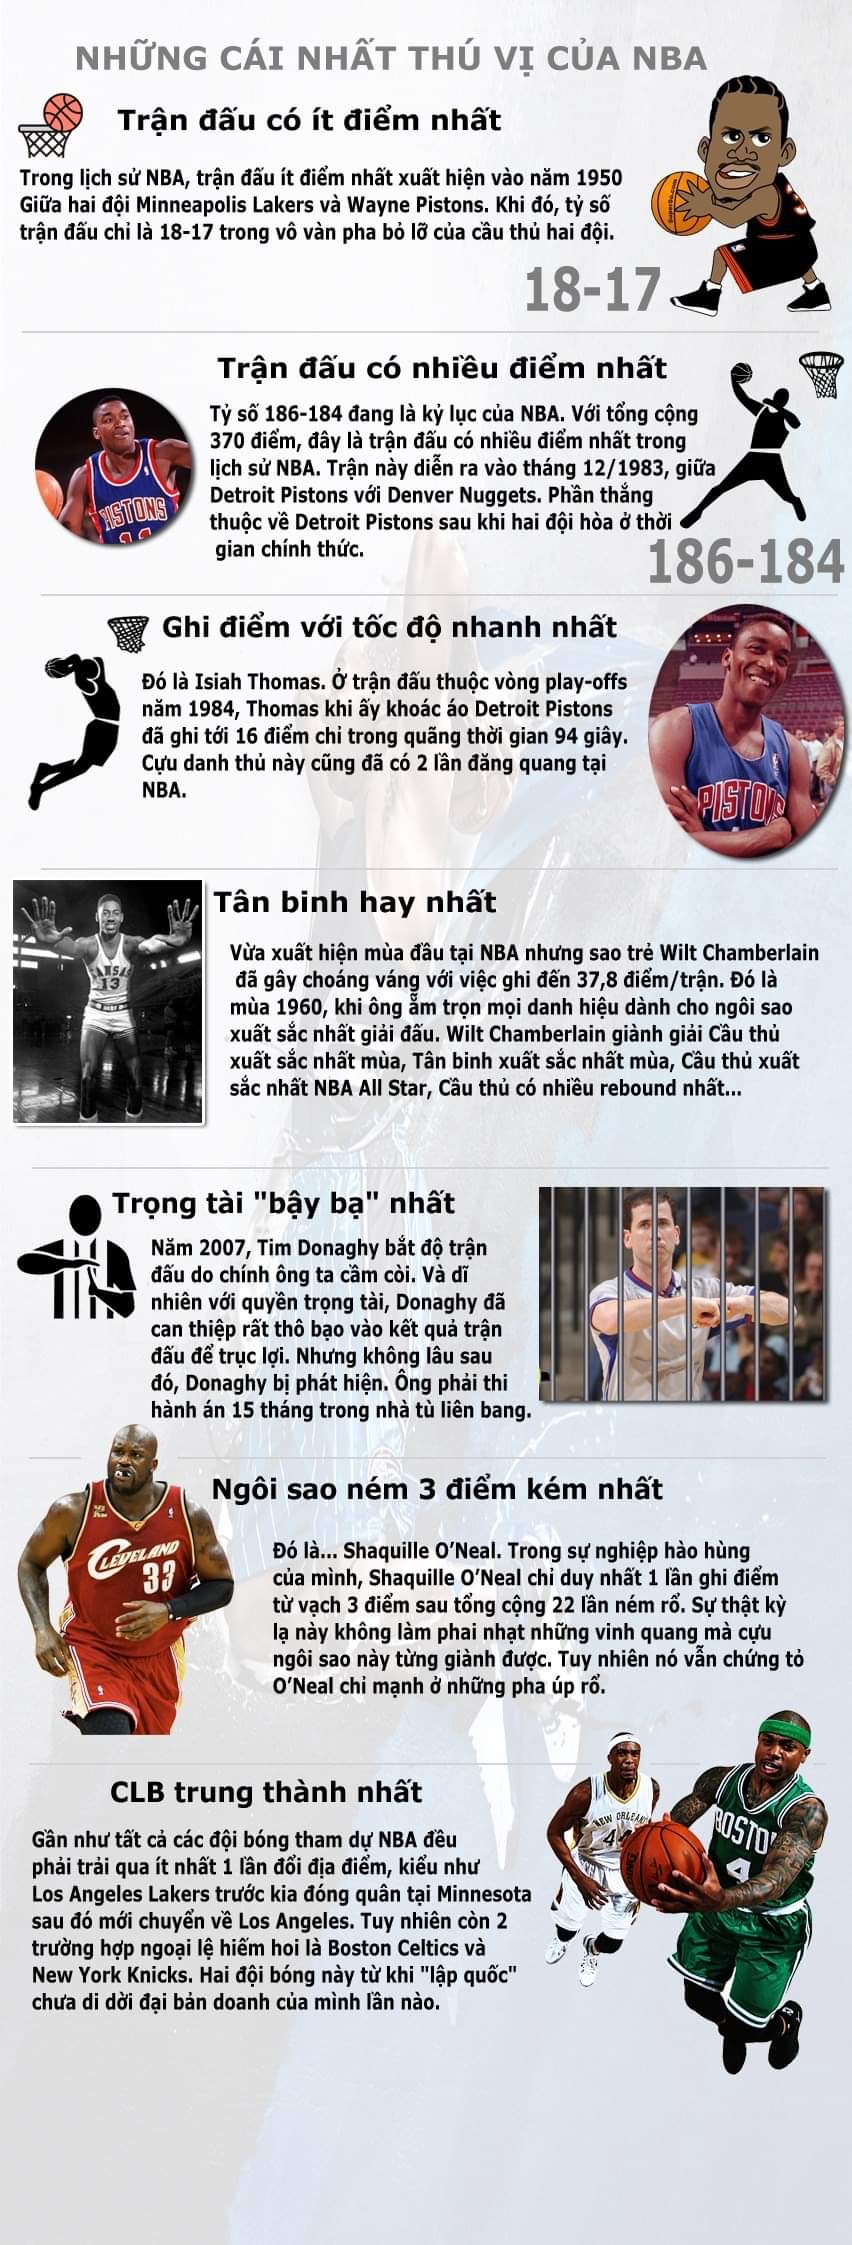 Những cái nhất thú vị tại NBA - Ảnh 1